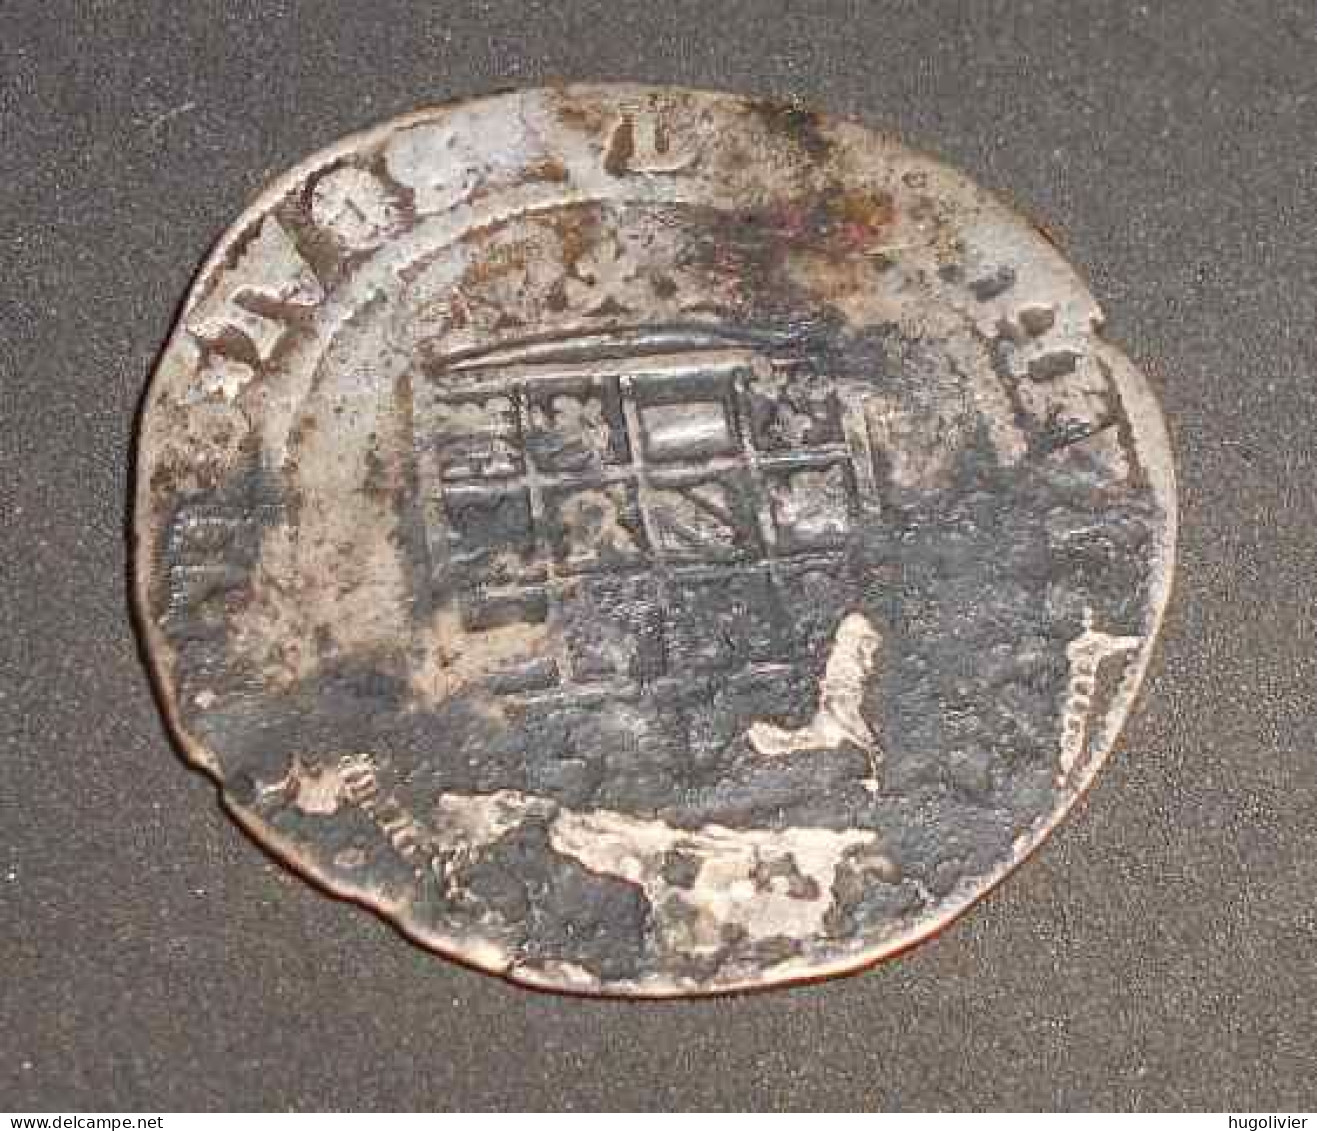 Ancienne Monnaie Sans Date 1/2 Réal D'argent Charles Quint Karolus 1506 -1520 - 1556-1713 Pays-Bas Espagols